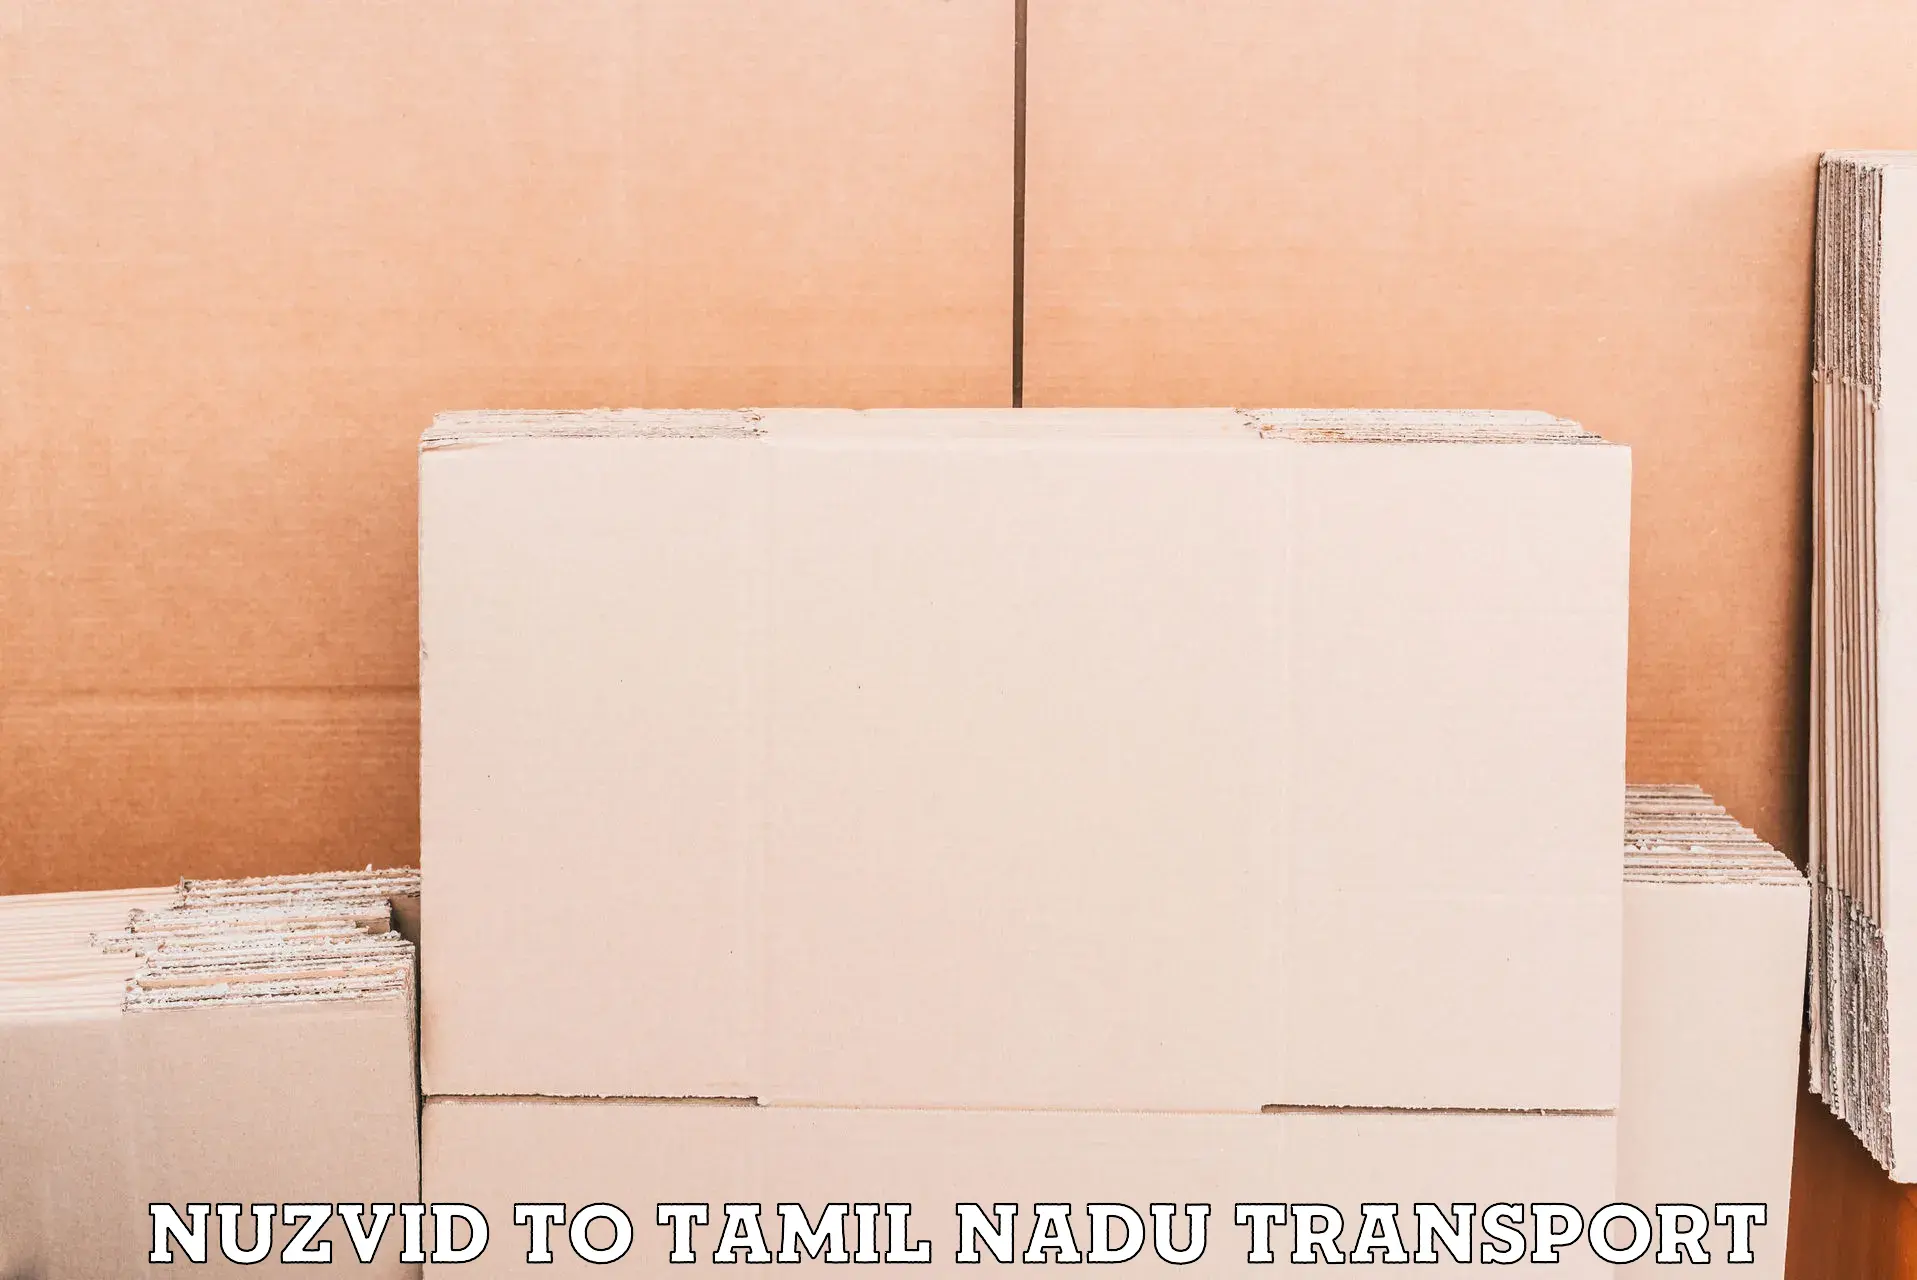 Nearest transport service Nuzvid to IIT Madras